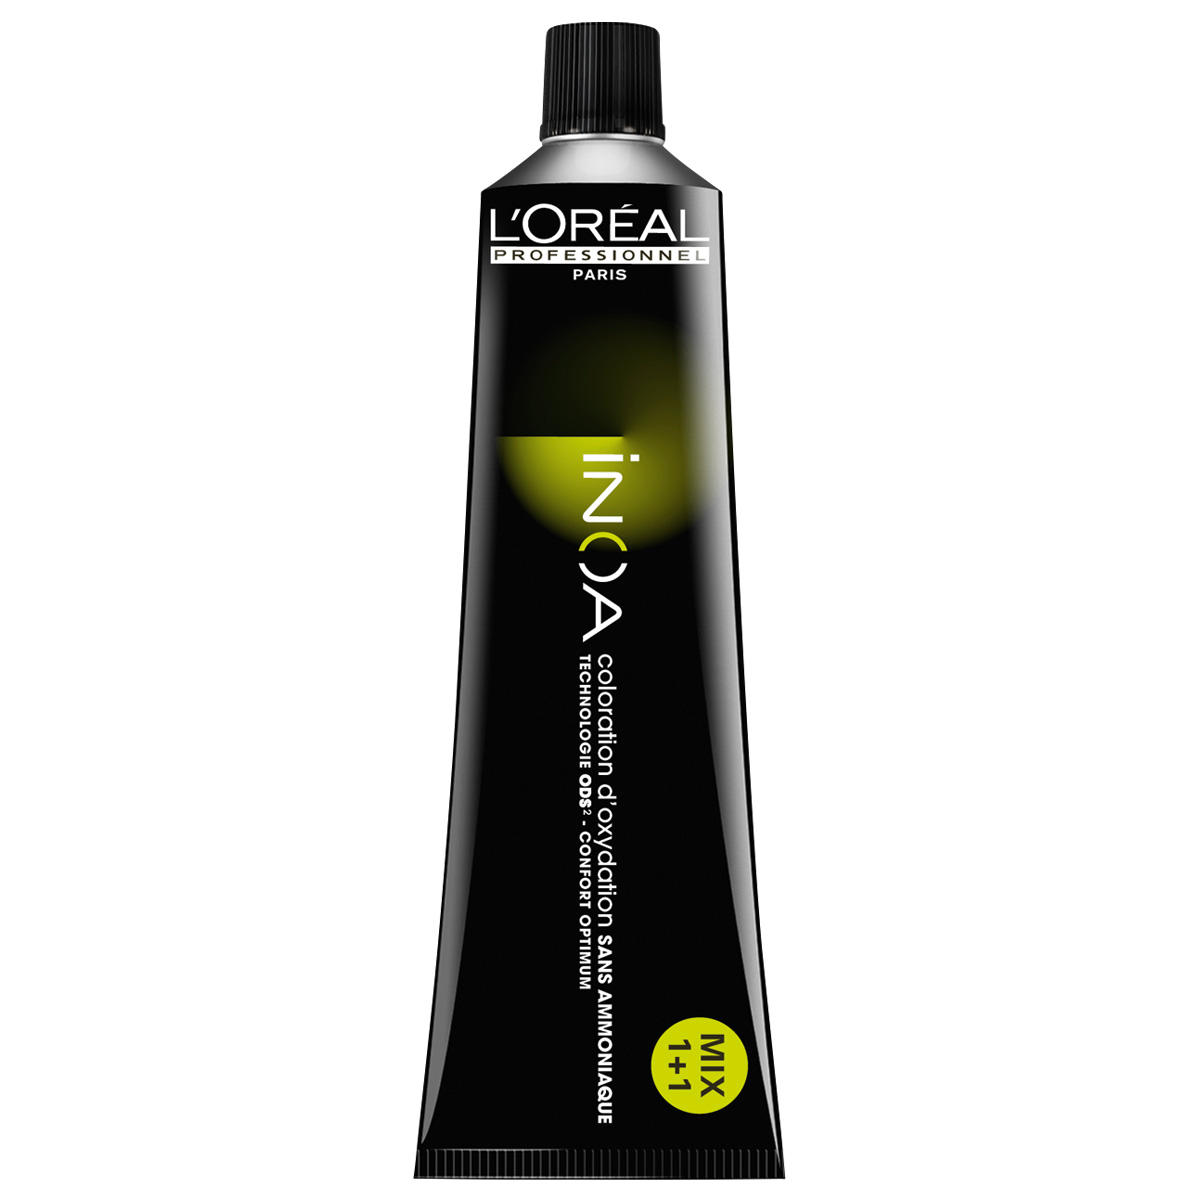 L'Oréal Professionnel Paris Coloration 6.0 Biondo Scuro Intensivo, Tubo 60 ml